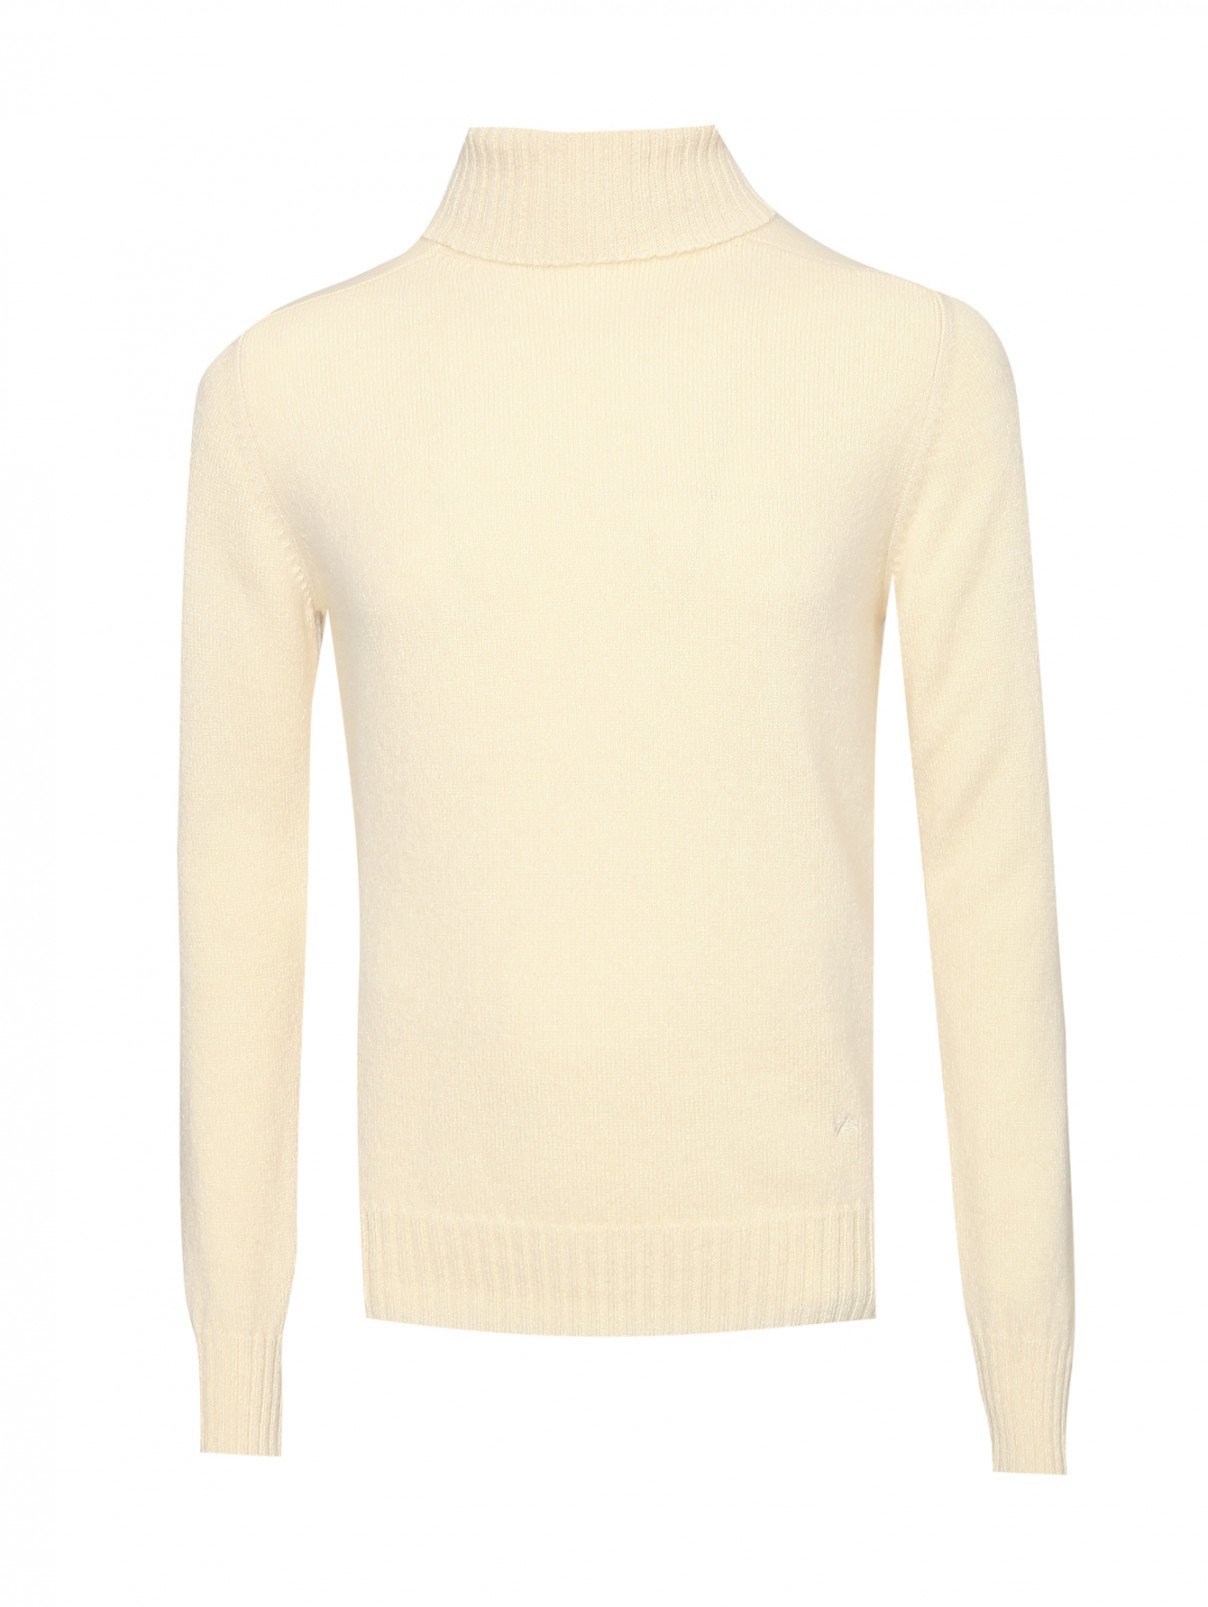 Однотонный свитер из кашемира Isaia  –  Общий вид  – Цвет:  Белый